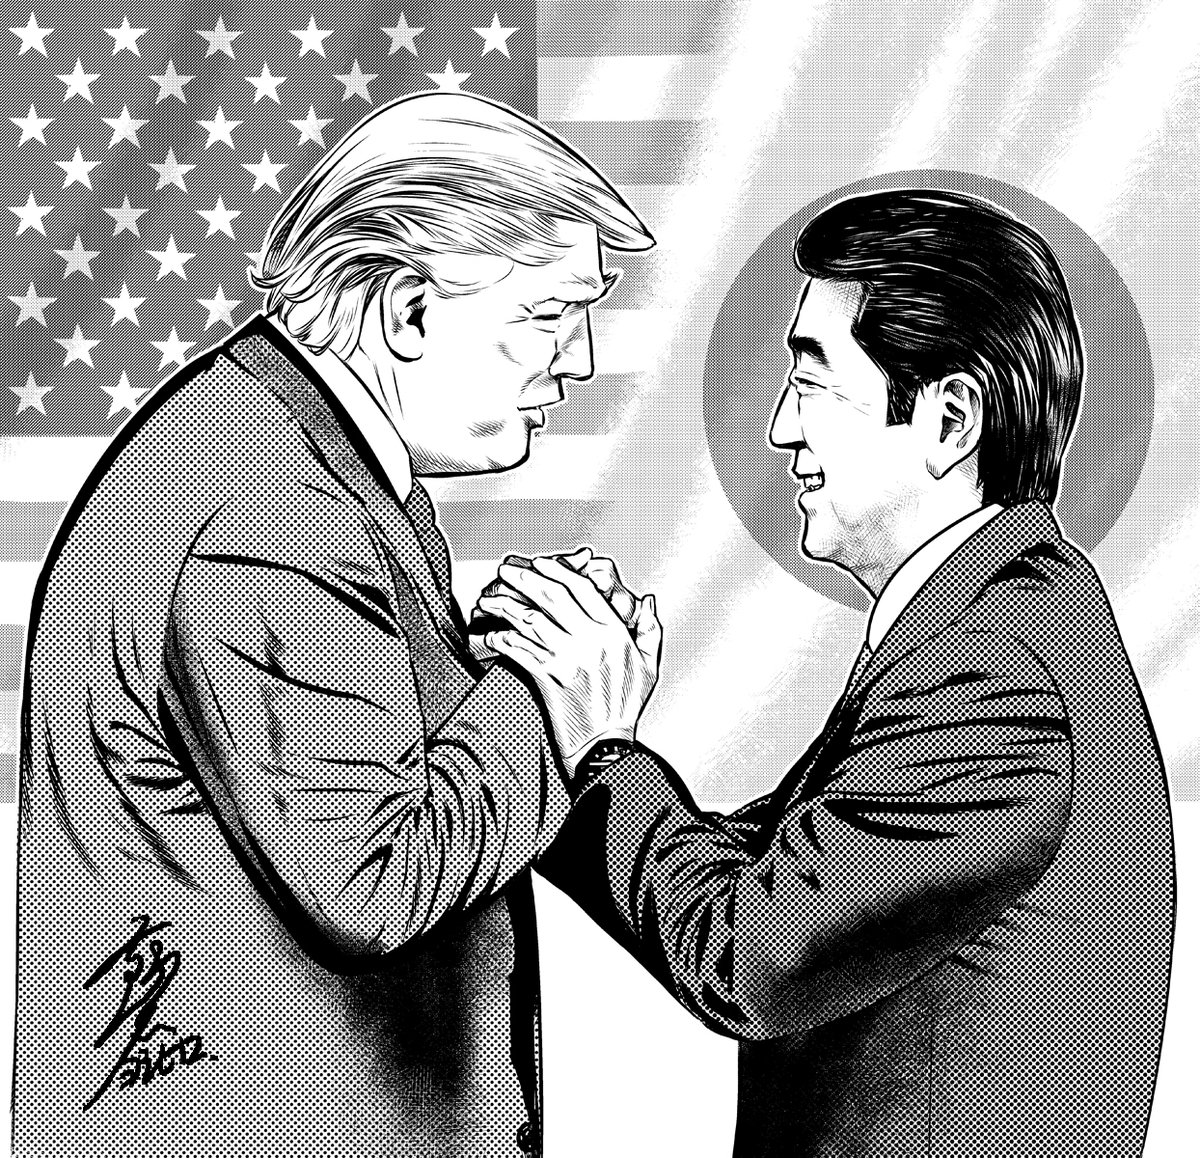 トランプ前大統領「彼のような人は、もう二度と現れないだろう」安倍元首相の死去を受け | FNNプライムオンライン https://t.co/v6ovWDvj01 
昔描いたイラスト出て来た。なんかどっちも良い顔してるよな。 